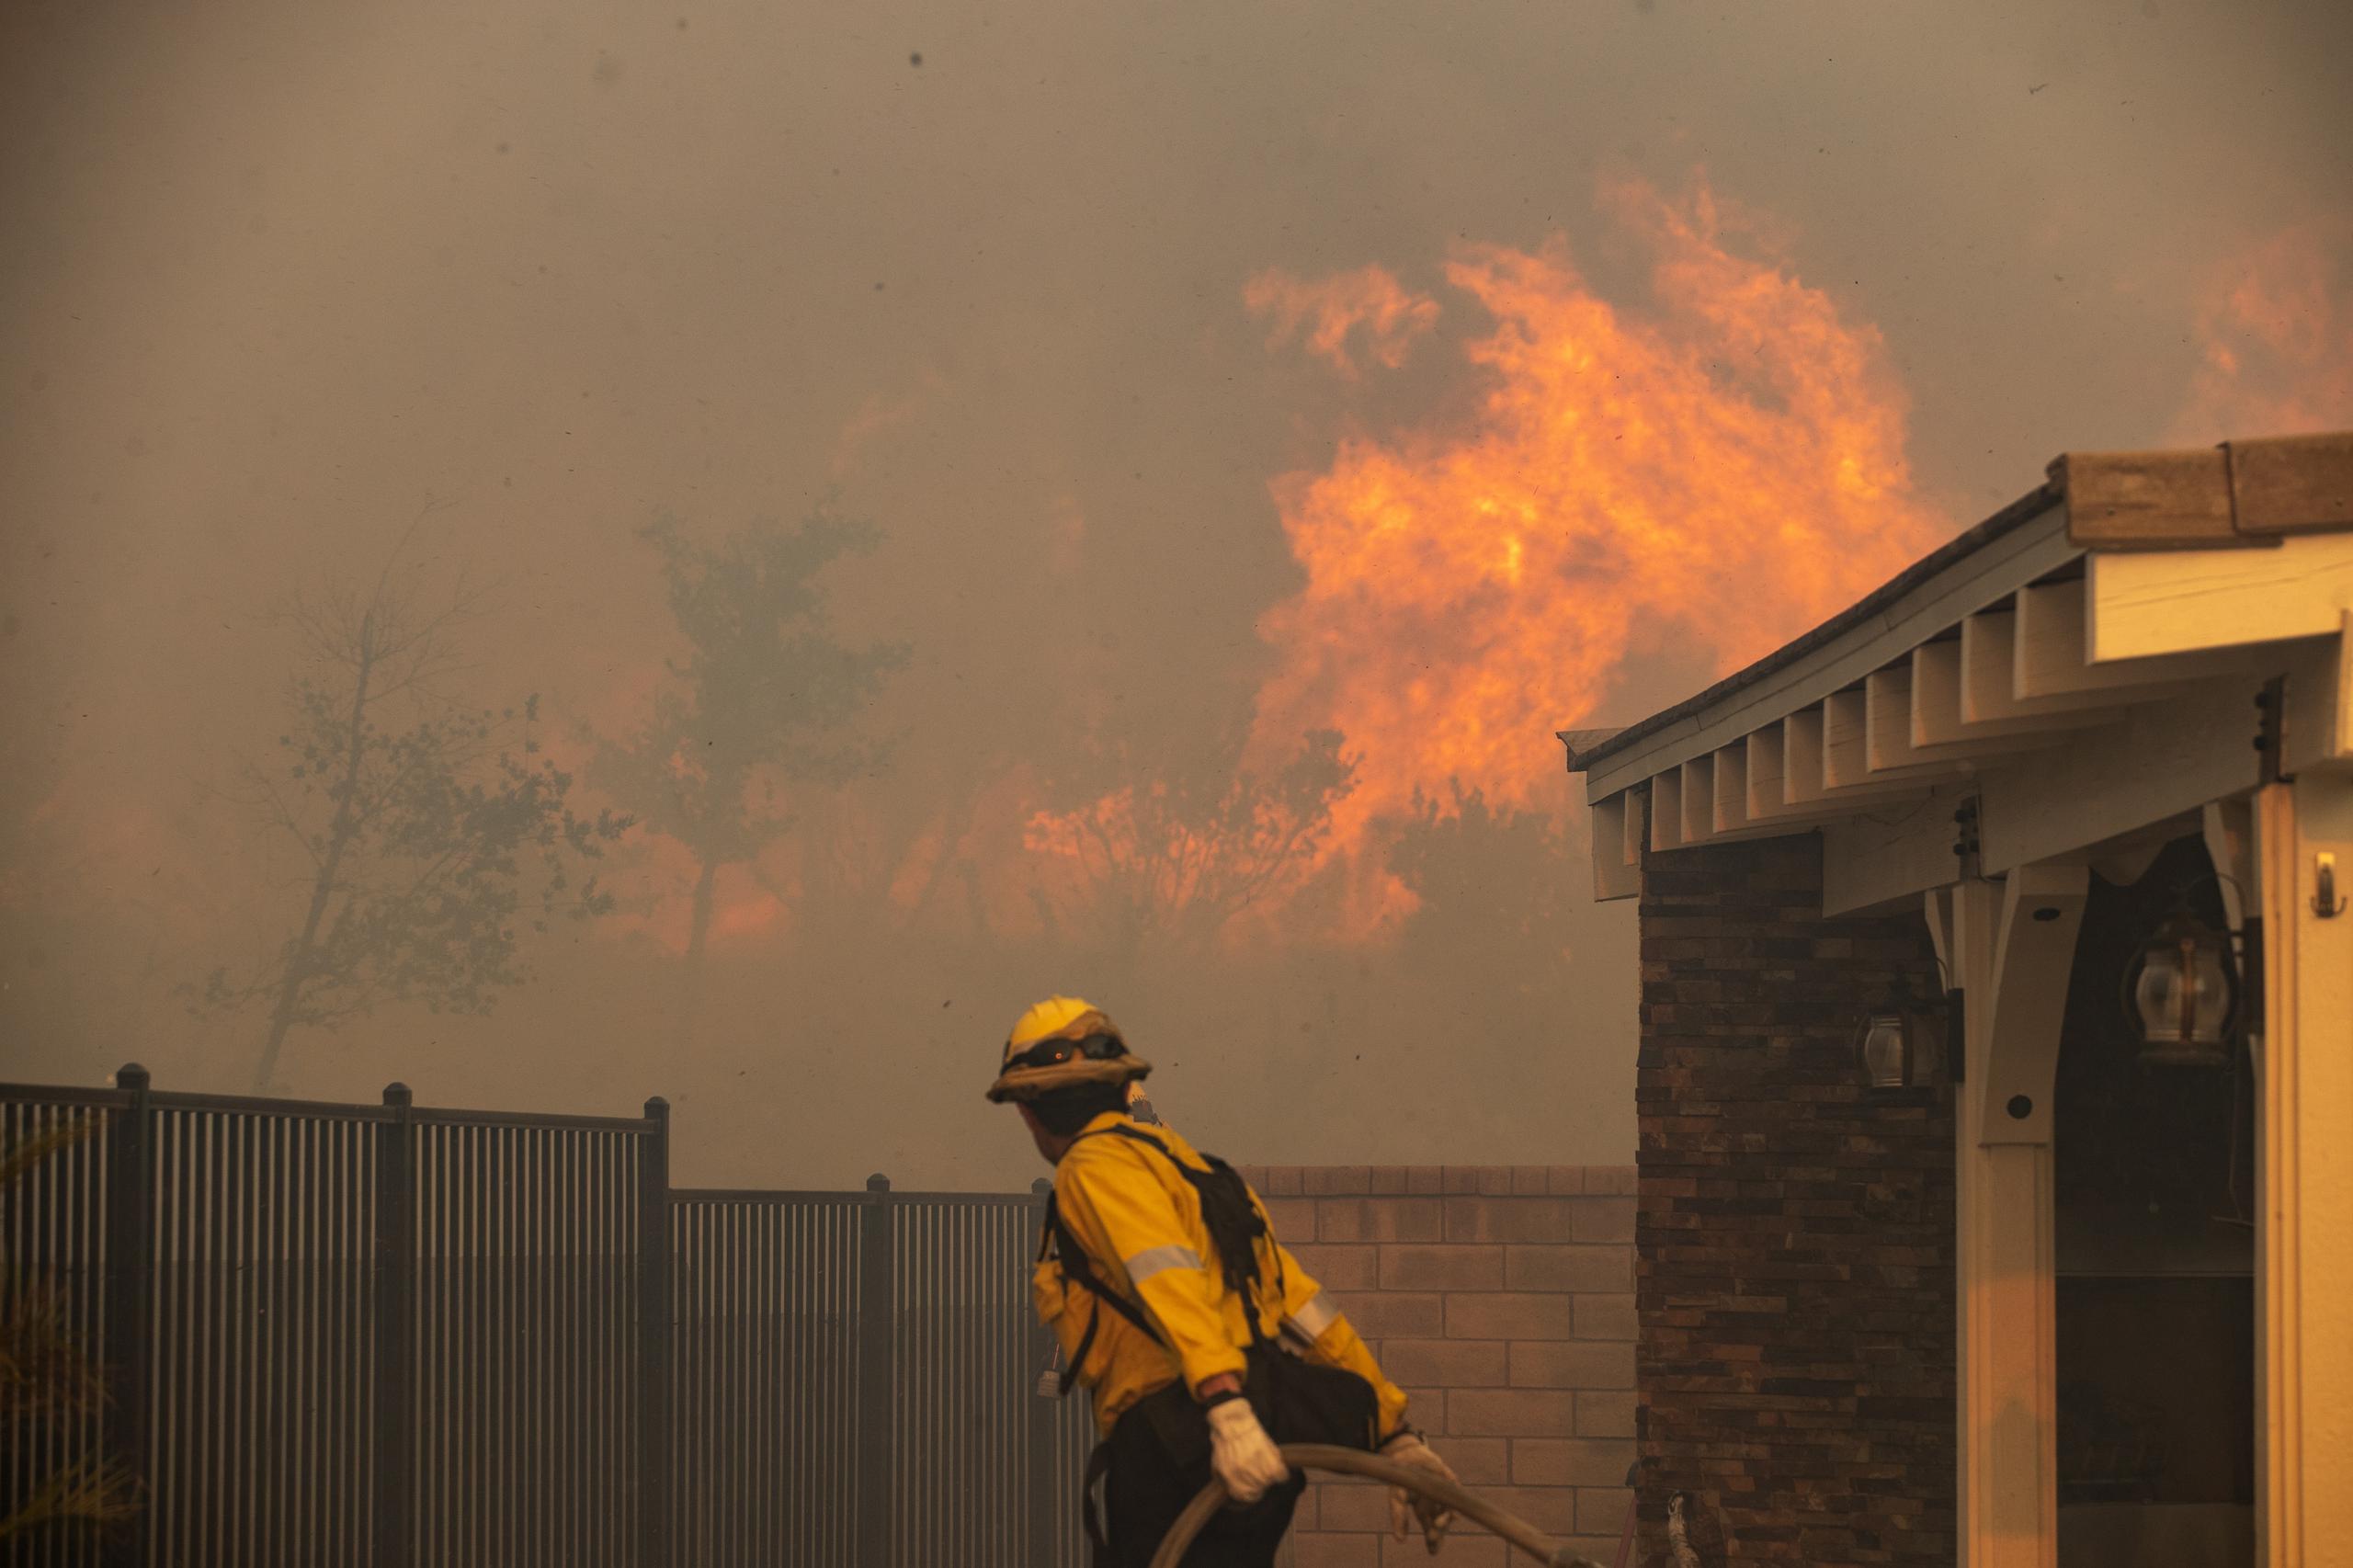 Un incendio en un barrio costero de Los Ángeles, que ha quemado más de 530 hectáreas, ha provocado la evacuación de más de 1,000 personas en las últimas horas, informaron este lunes autoridades locales.